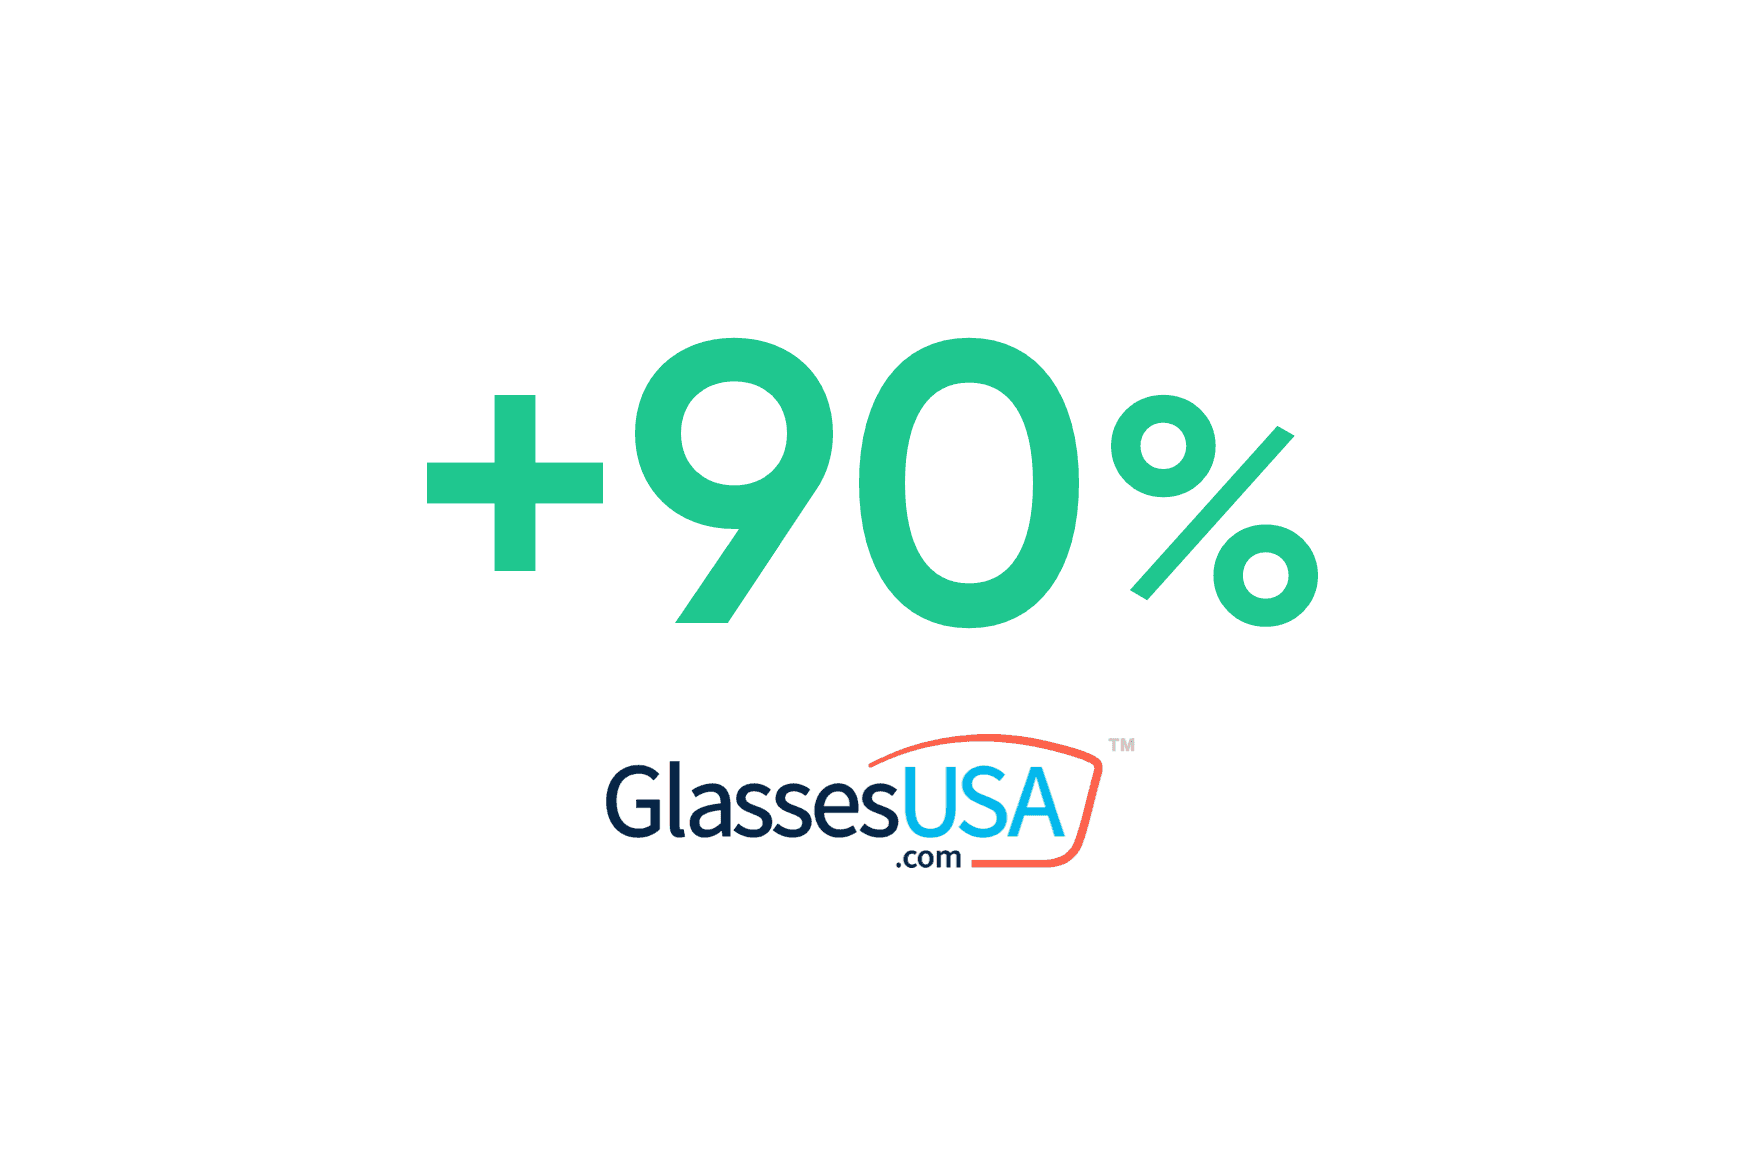 Glasses USA: aumento da taxa de captação para 90%.